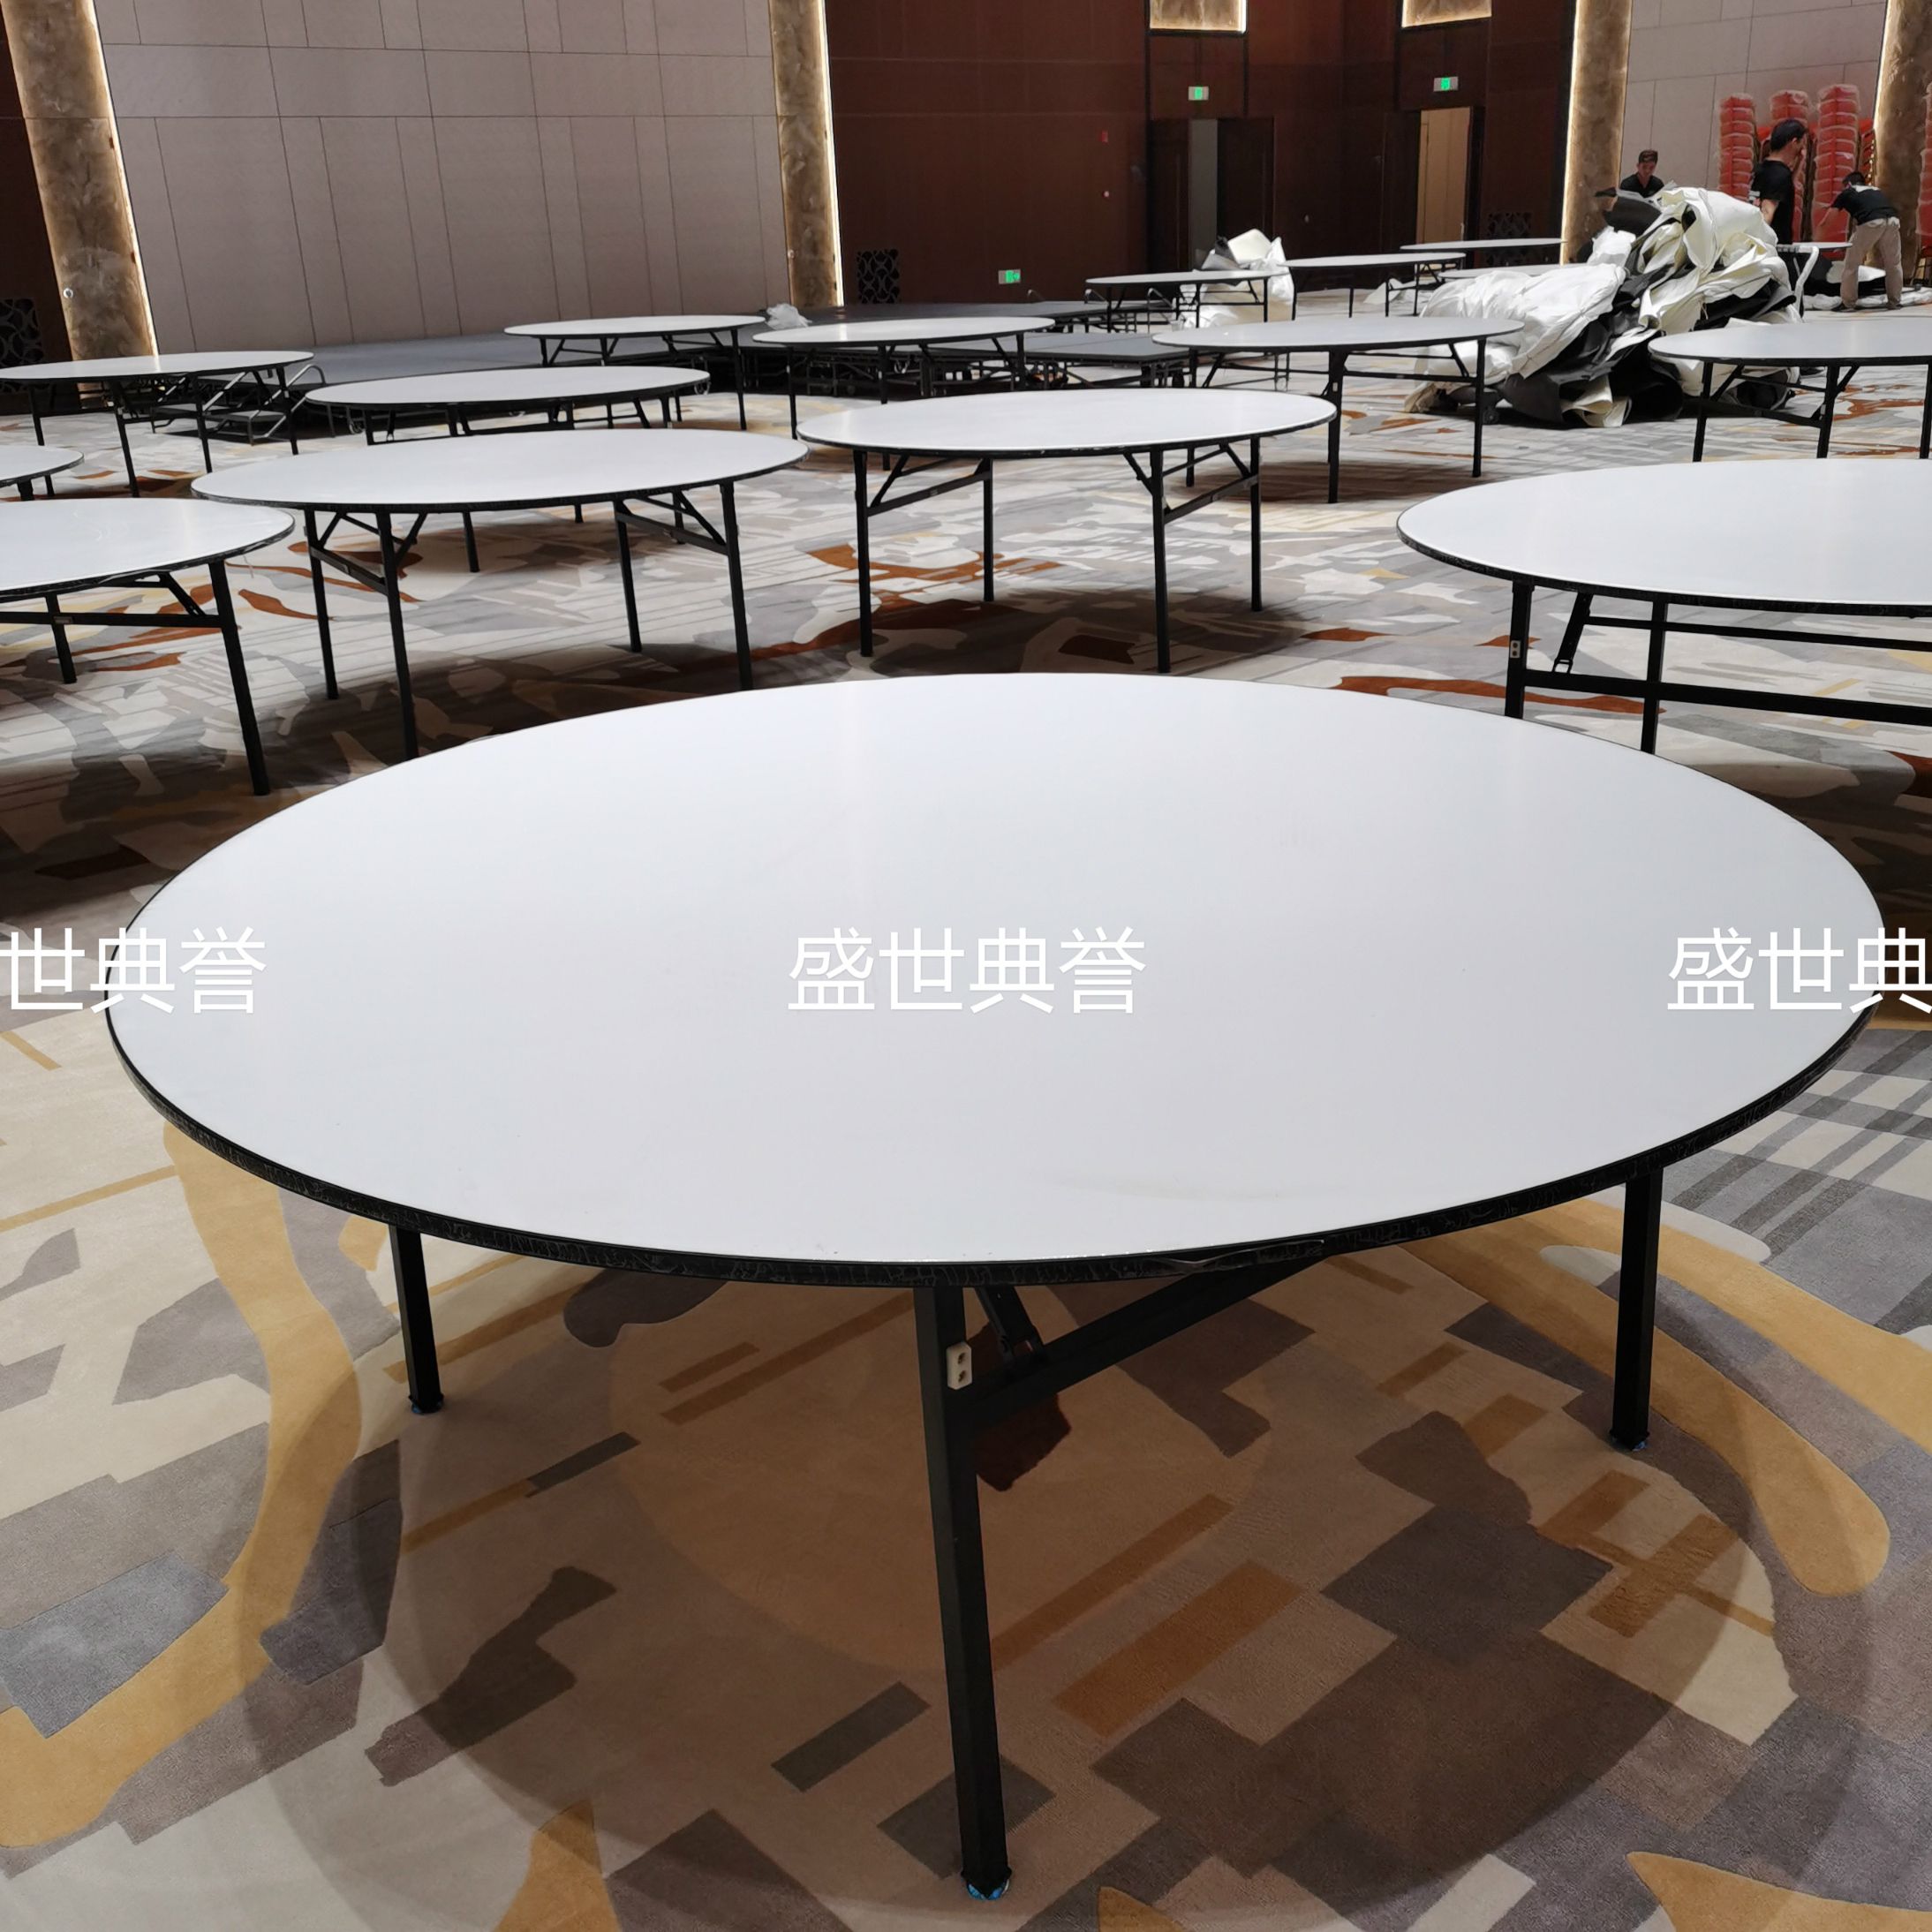 佛山酒店宴会厅折叠圆桌厂家定做国际会议中心婚宴餐桌椅折叠圆桌图